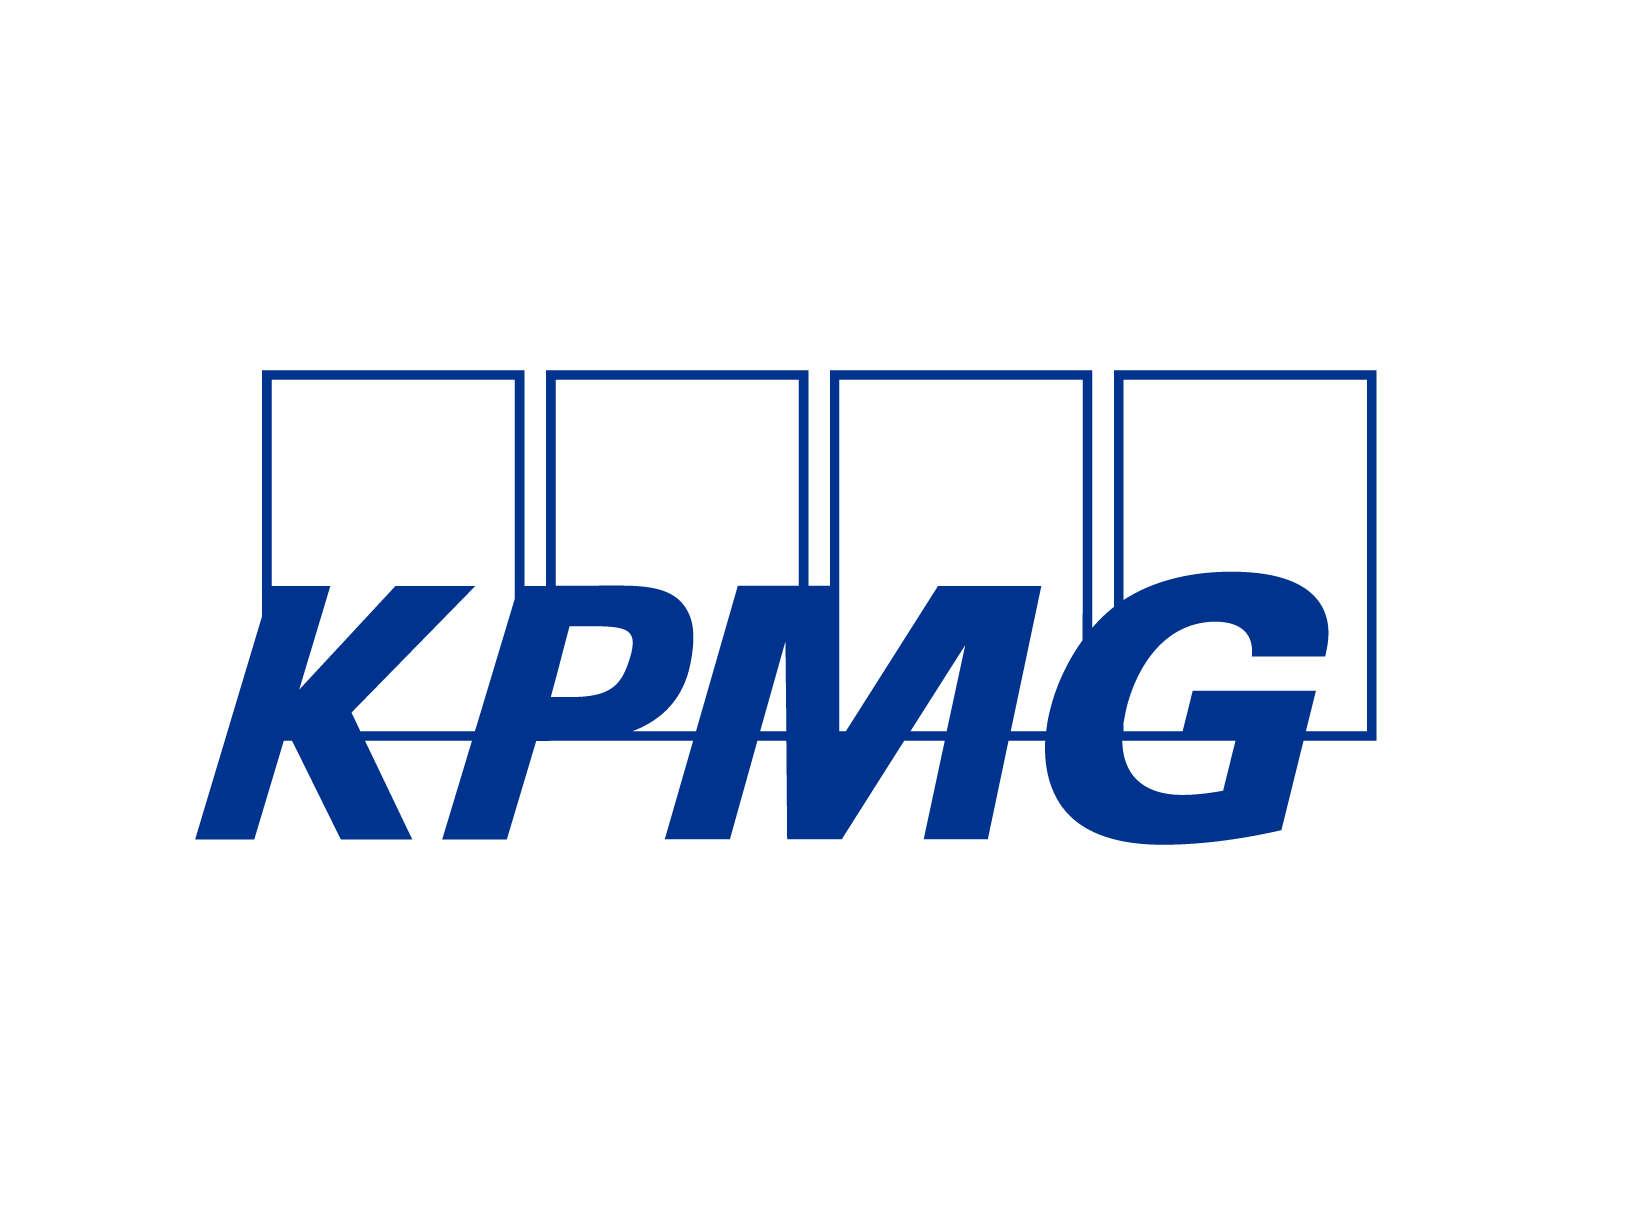 D. KPMG (Plata)